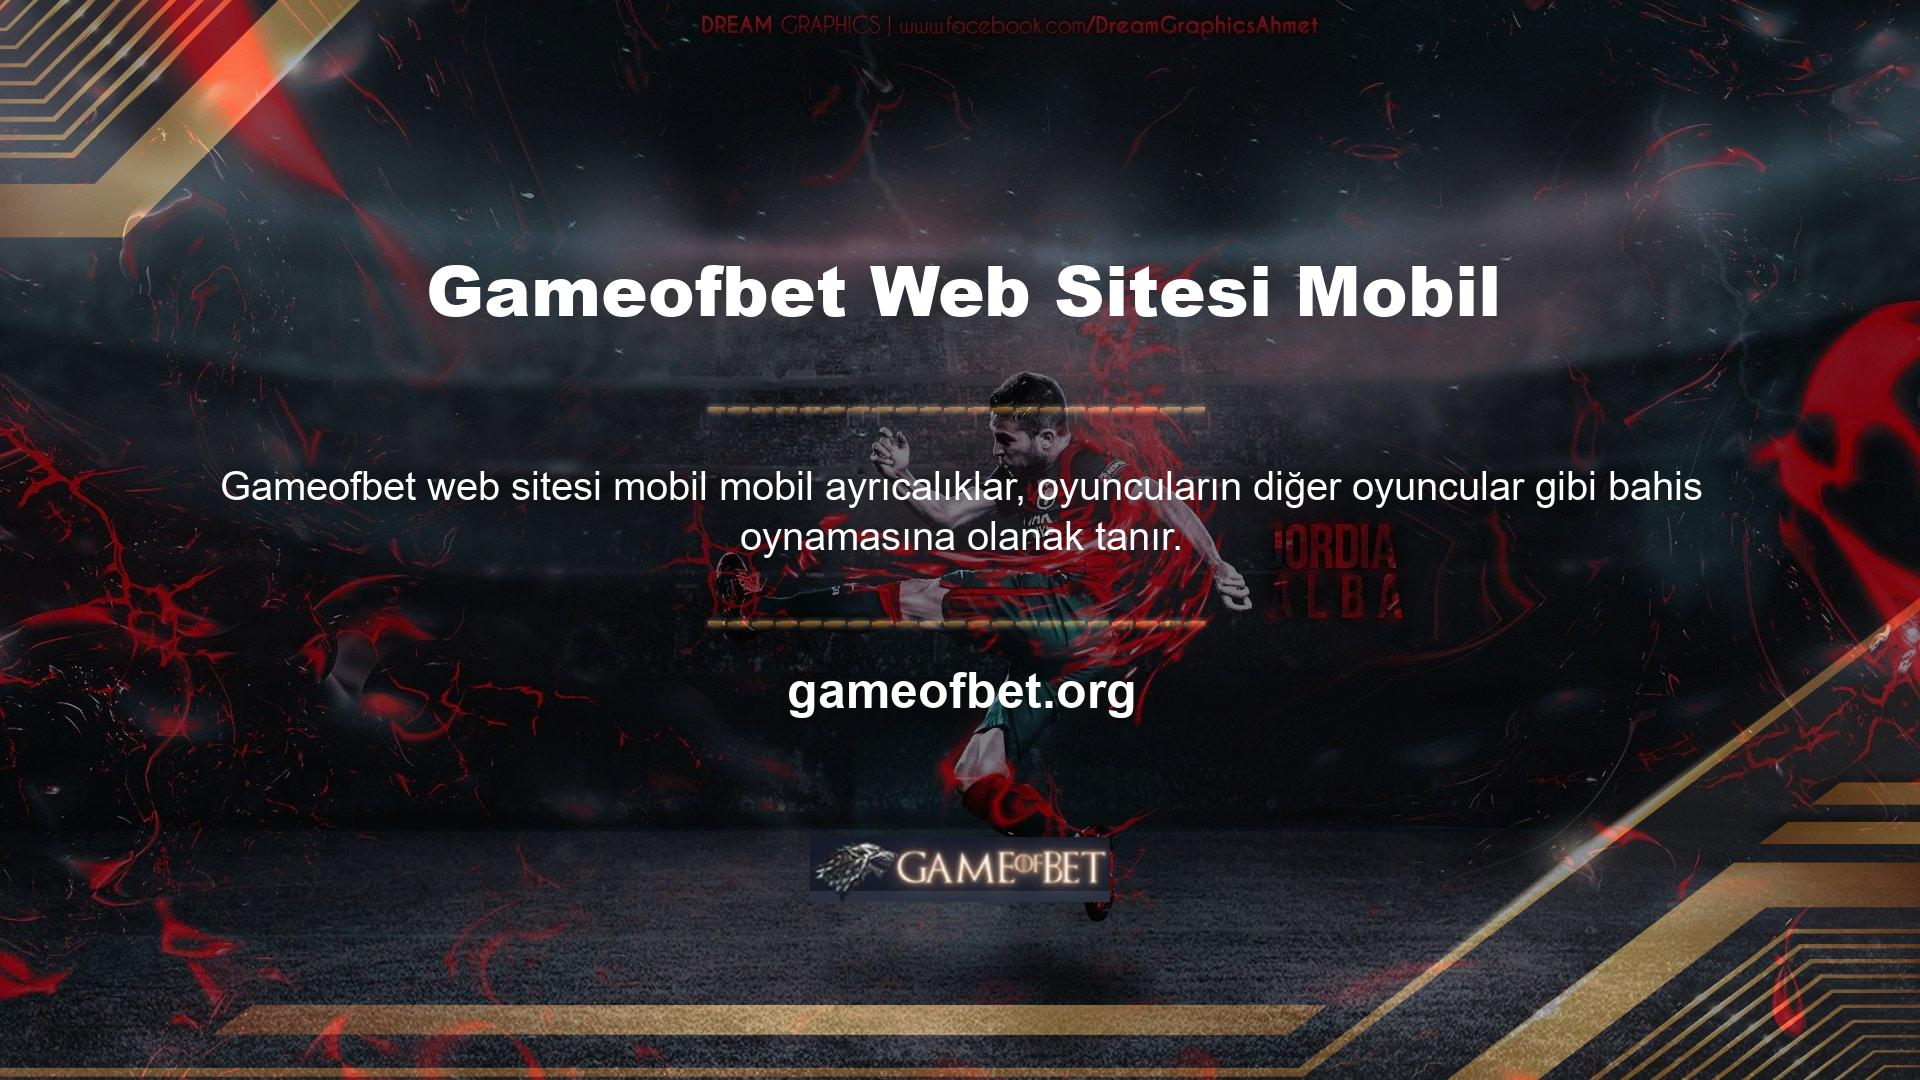 Bahisçiler cep telefonu ve tablet gibi seçeneklerin yerine Gameofbet sitesindeki mobil tema seçeneğini kullanabilirler